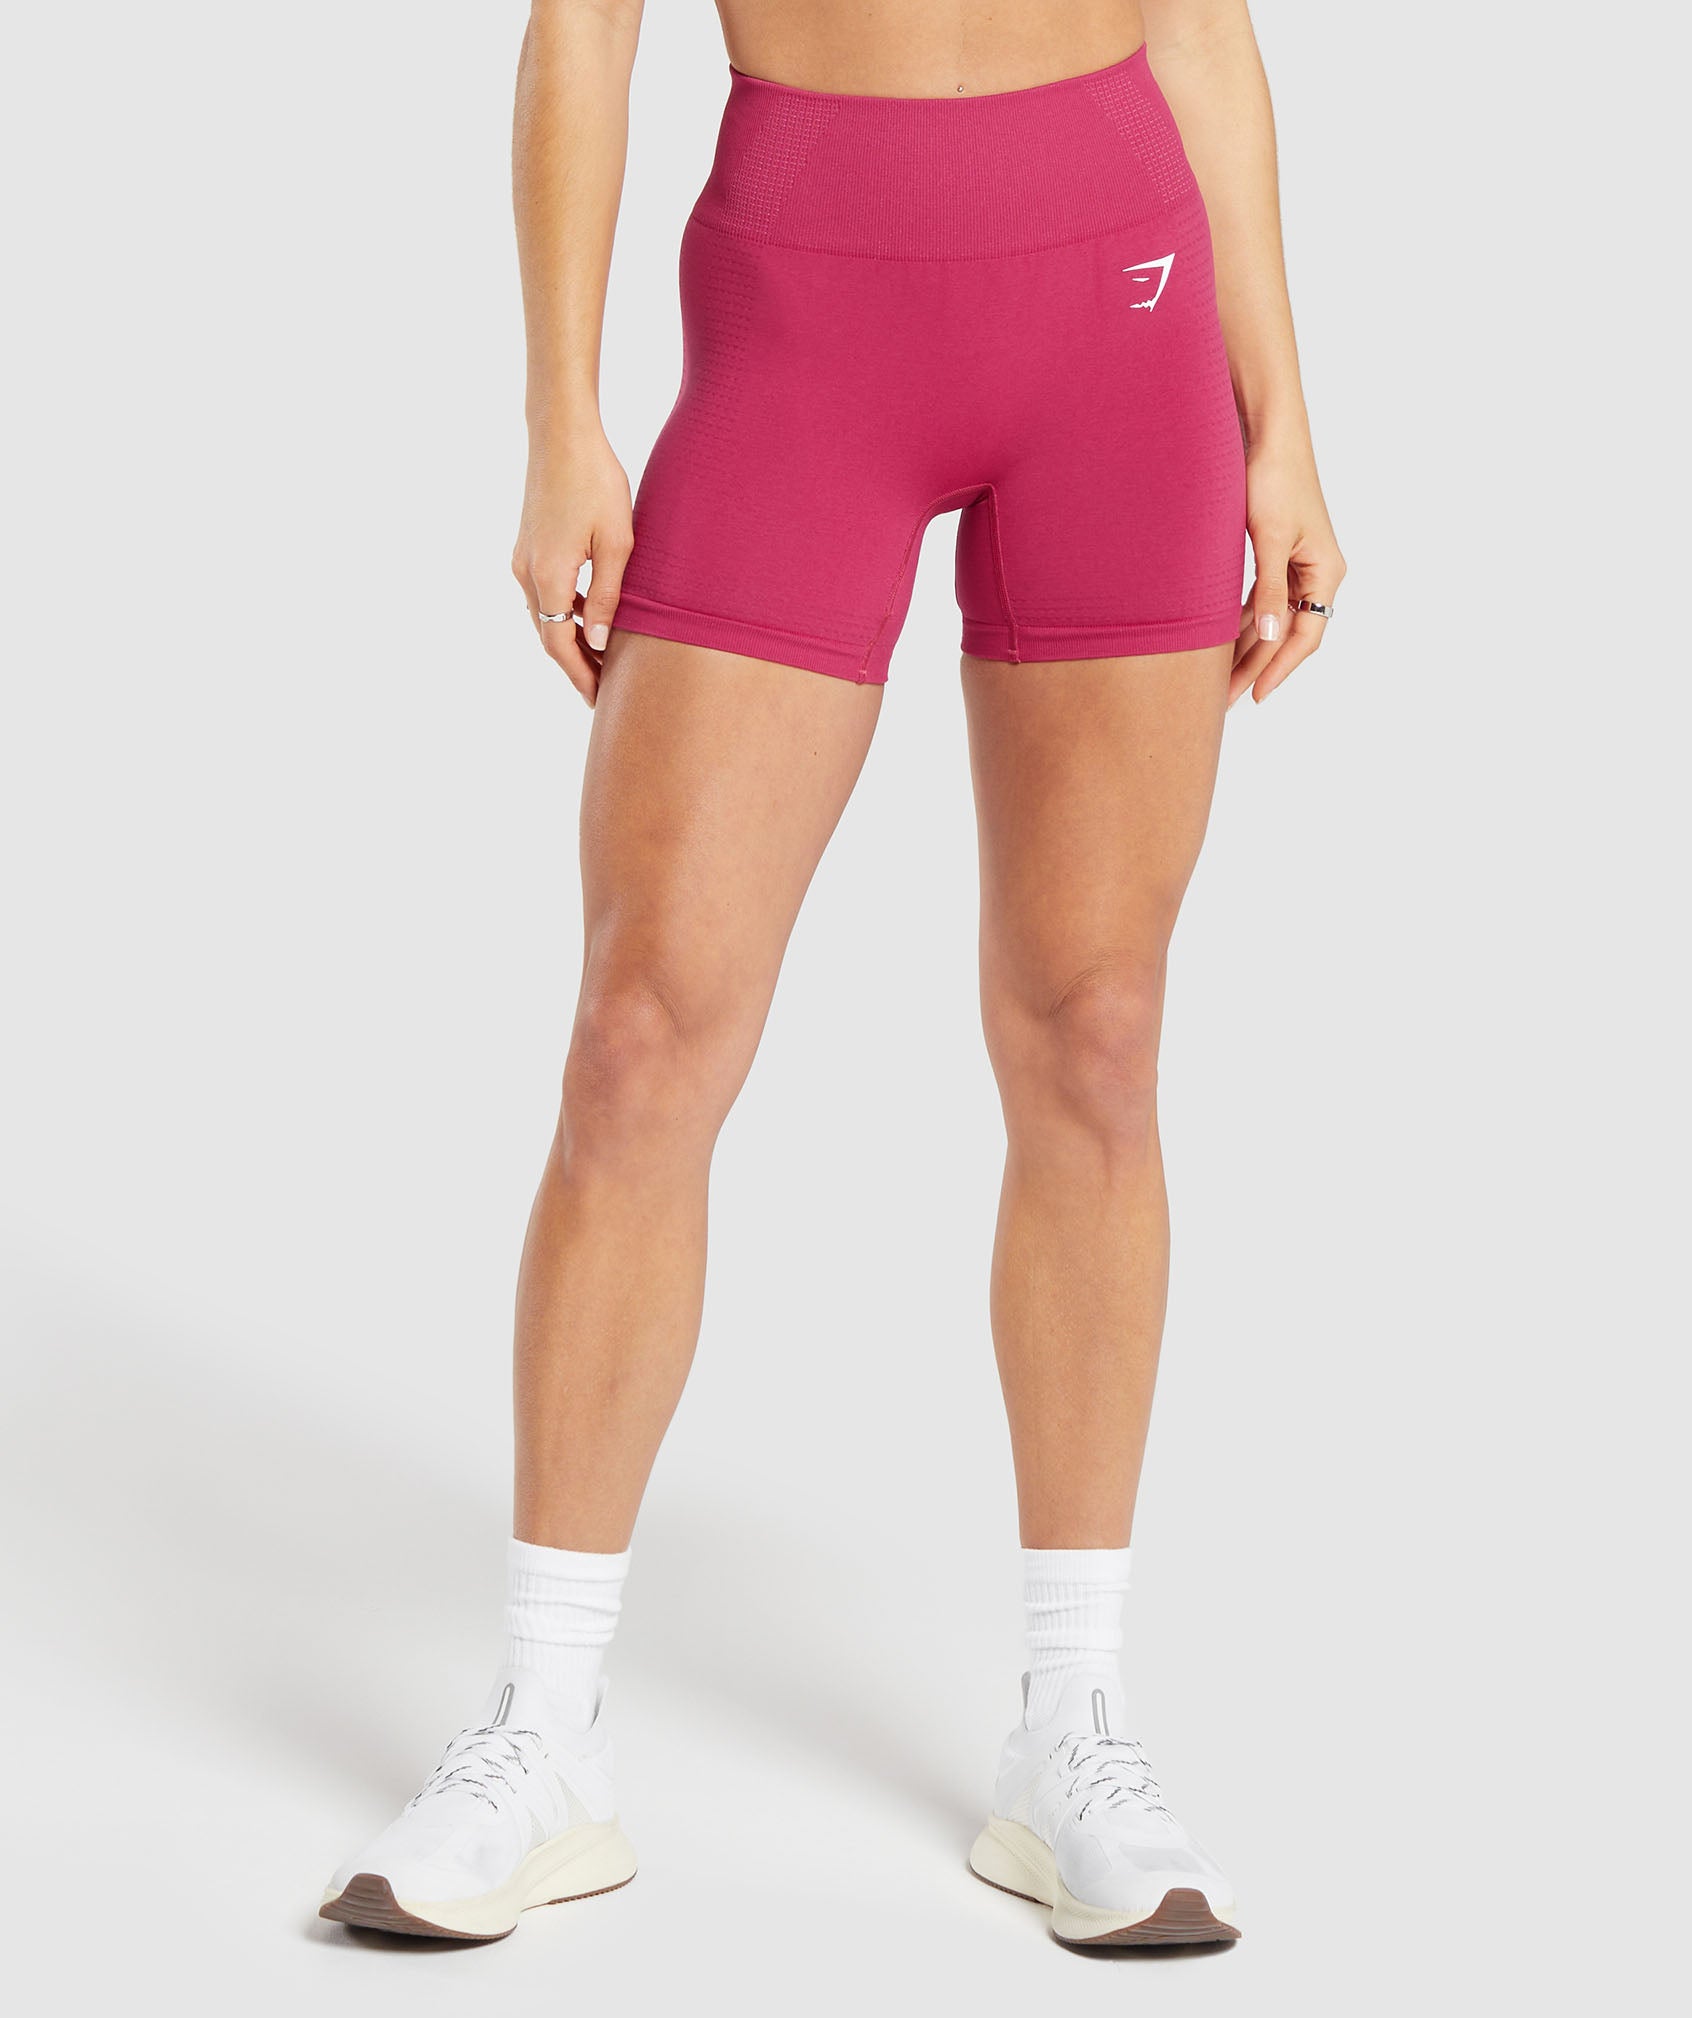 DNU Vital Seamless 2.0 Shorts in Vintage Pink/Marl ist nicht auf Lager